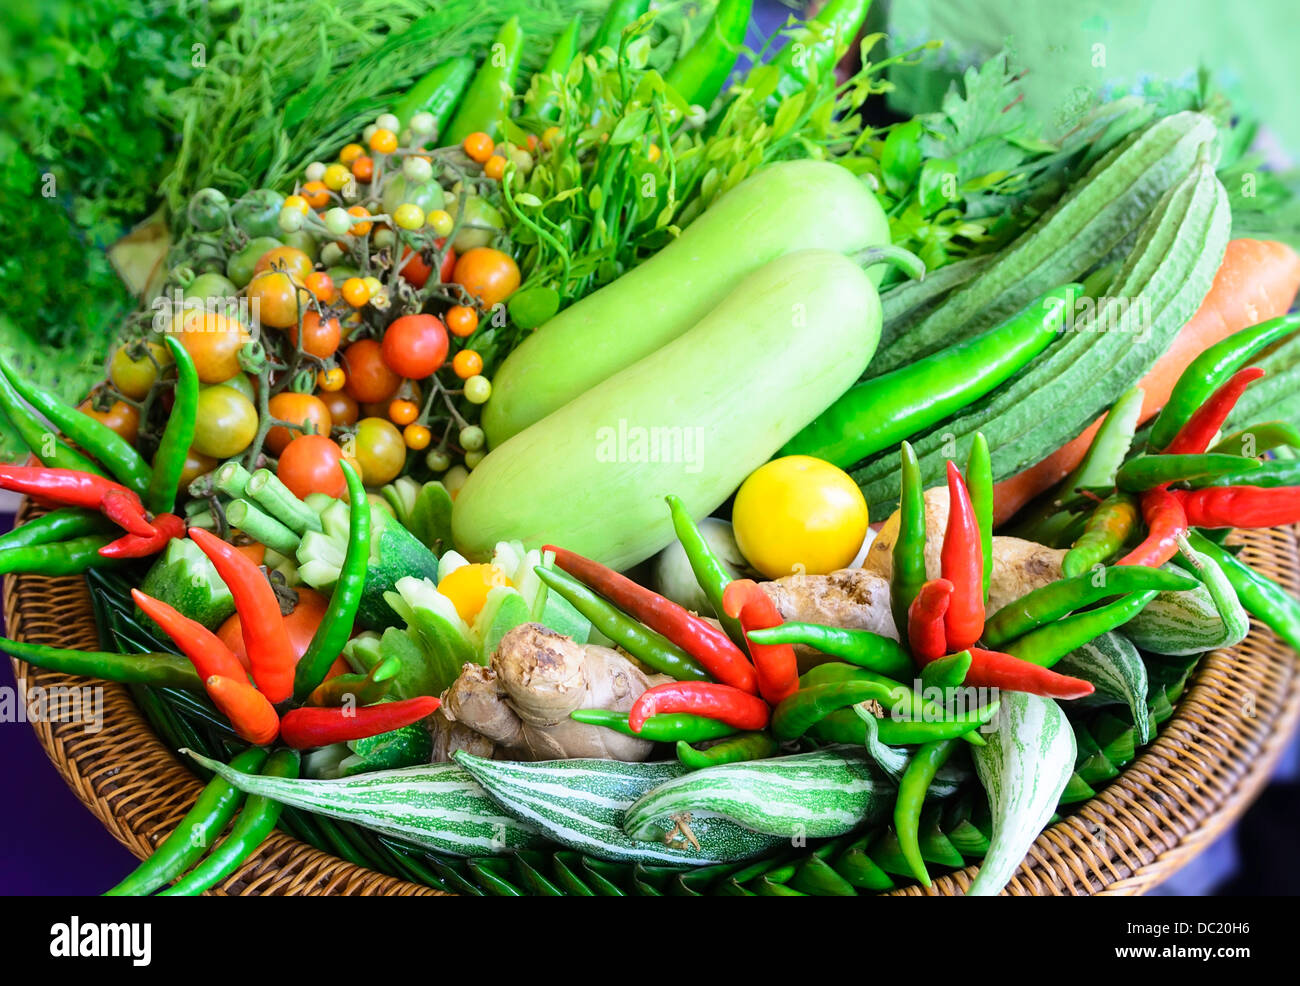 Bellissima la dieta alimentare frutta fresca salute sano verde pasto mercato nutrizione naturale organico gustosi dolci verdure vegetale Foto Stock